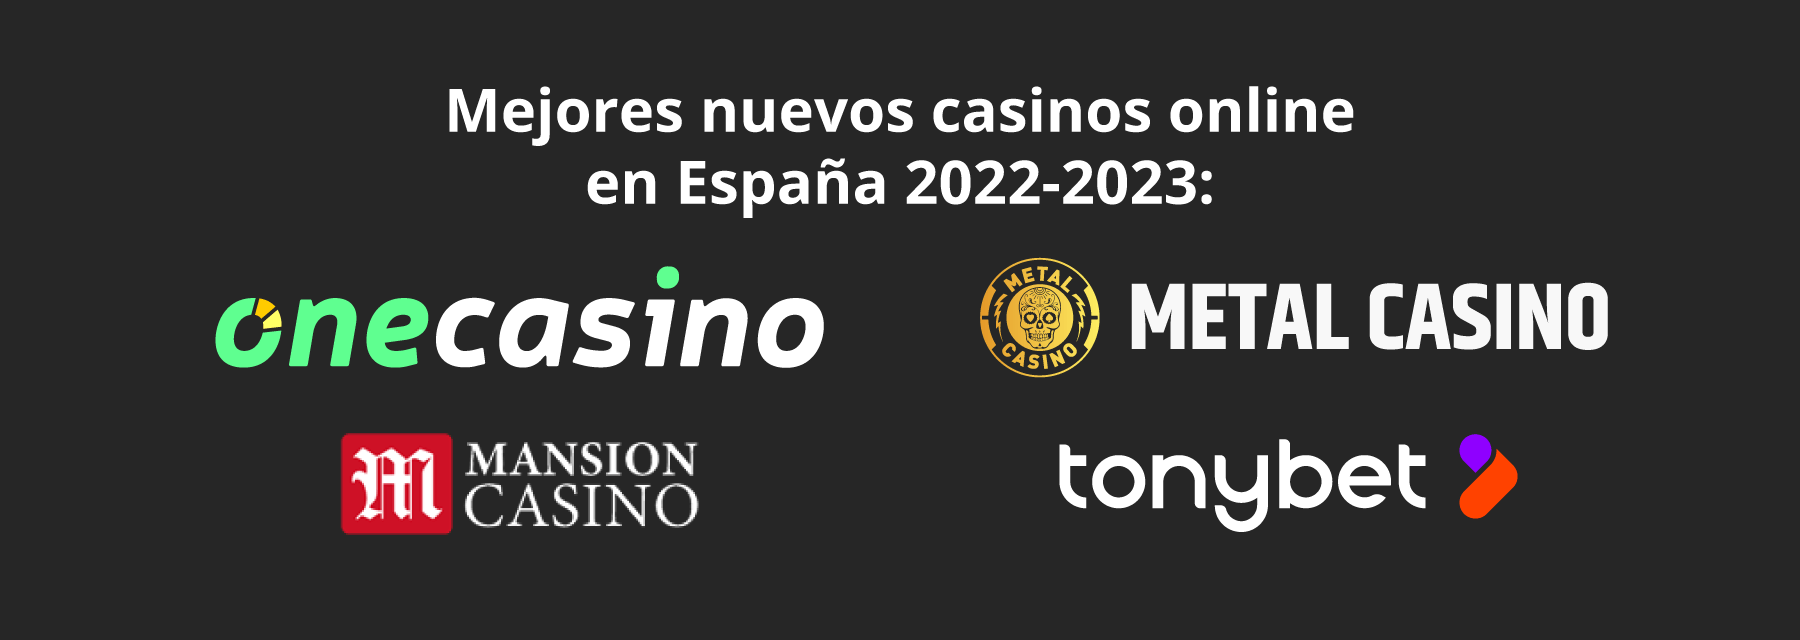 Nuevos casinos online en España